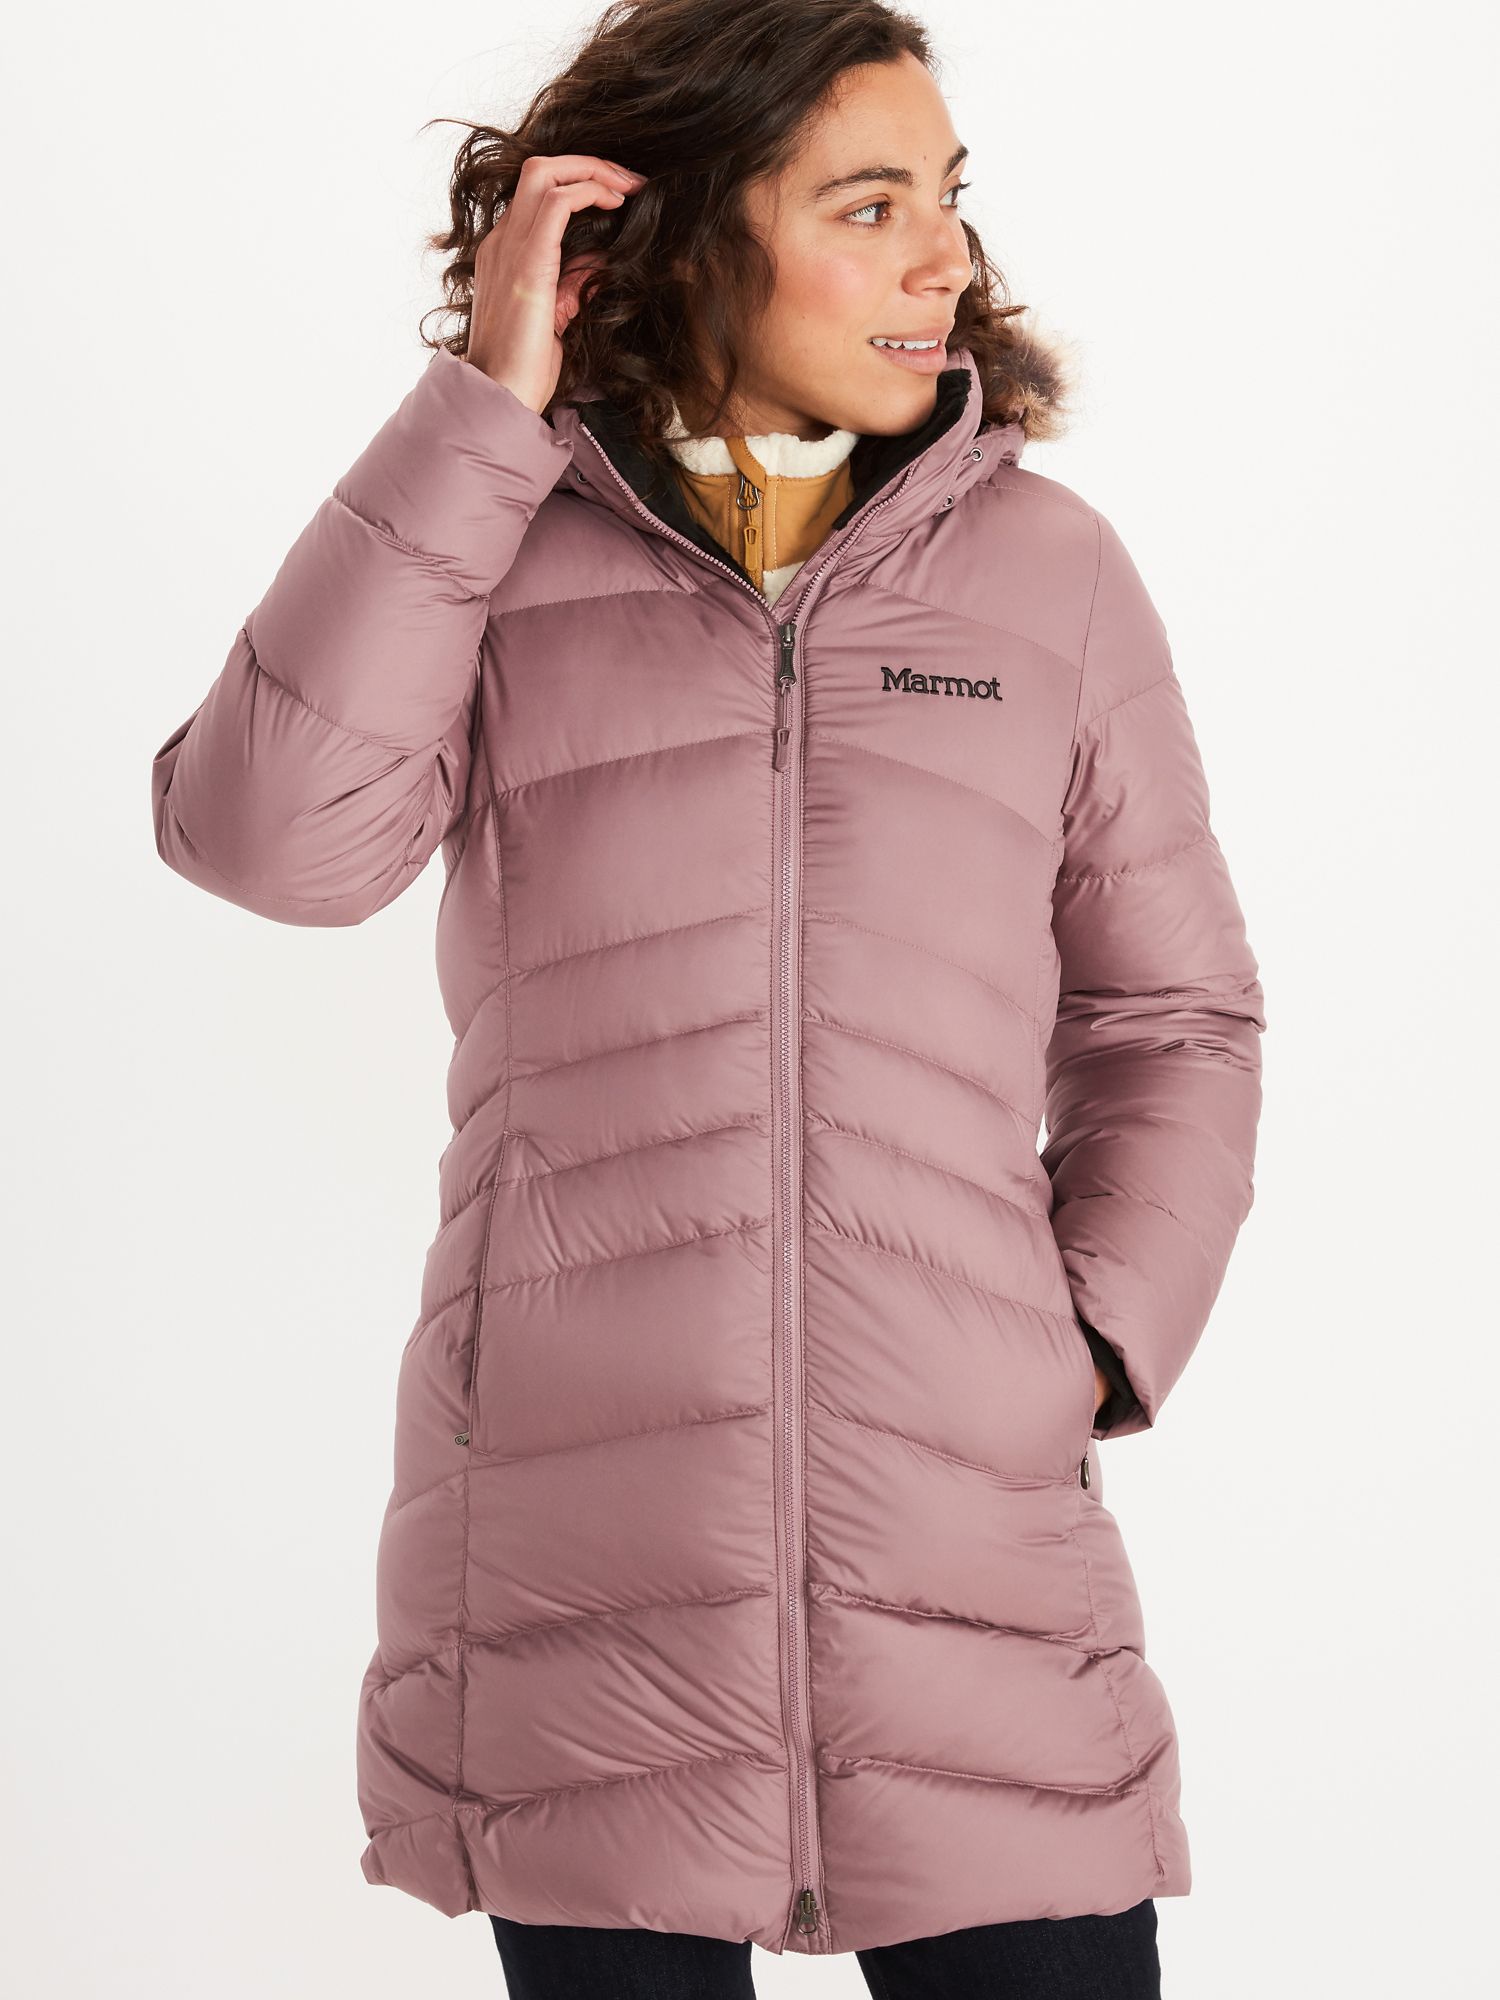 KASAAS Womens Warm Slim Jacket Thick Parka Winter Outwear Hooded Zipper Coat 